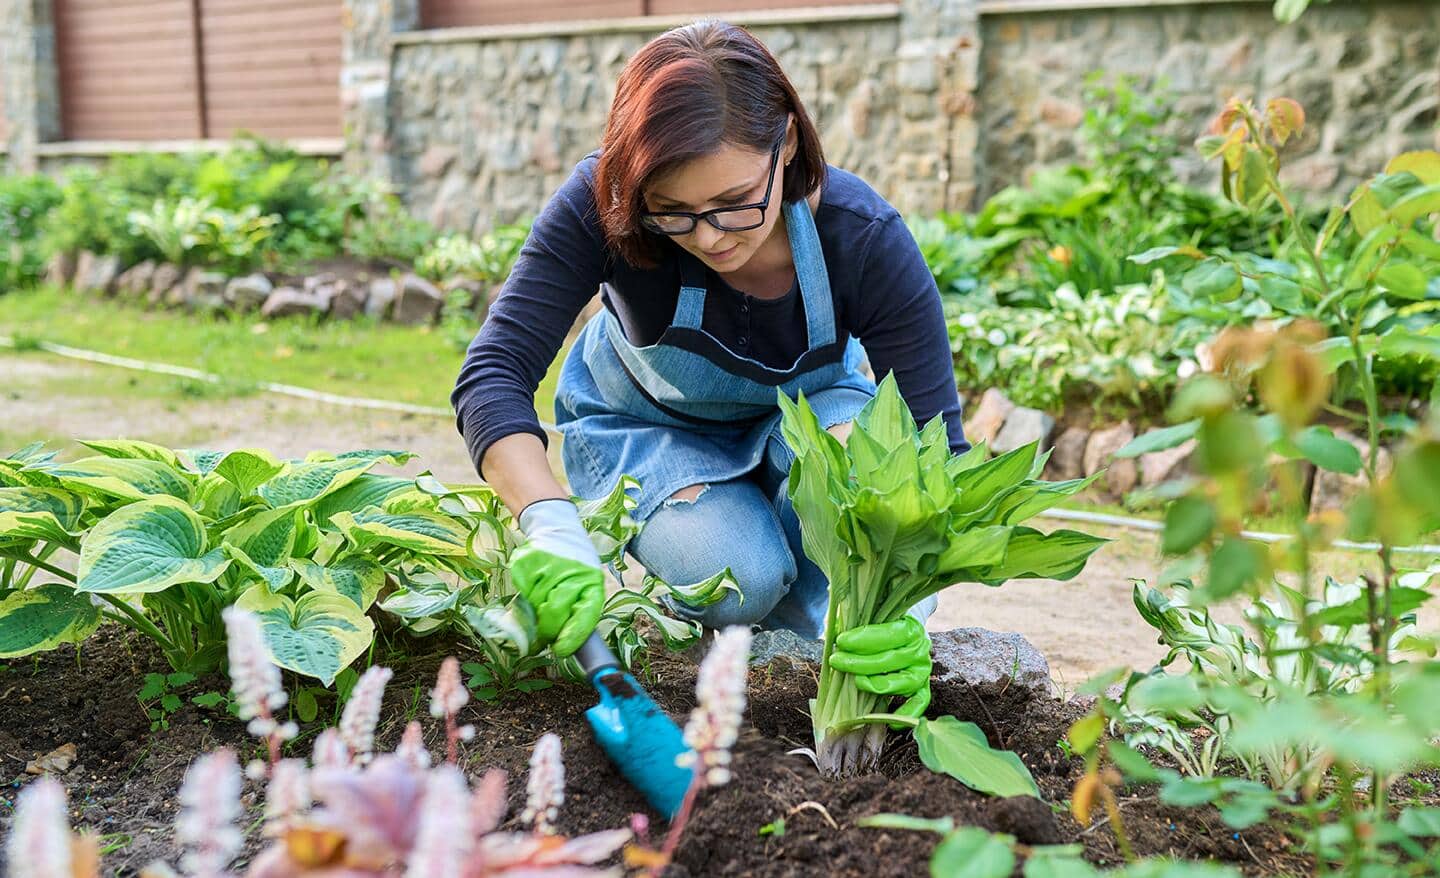 Gardener planting hostas in a flower bed